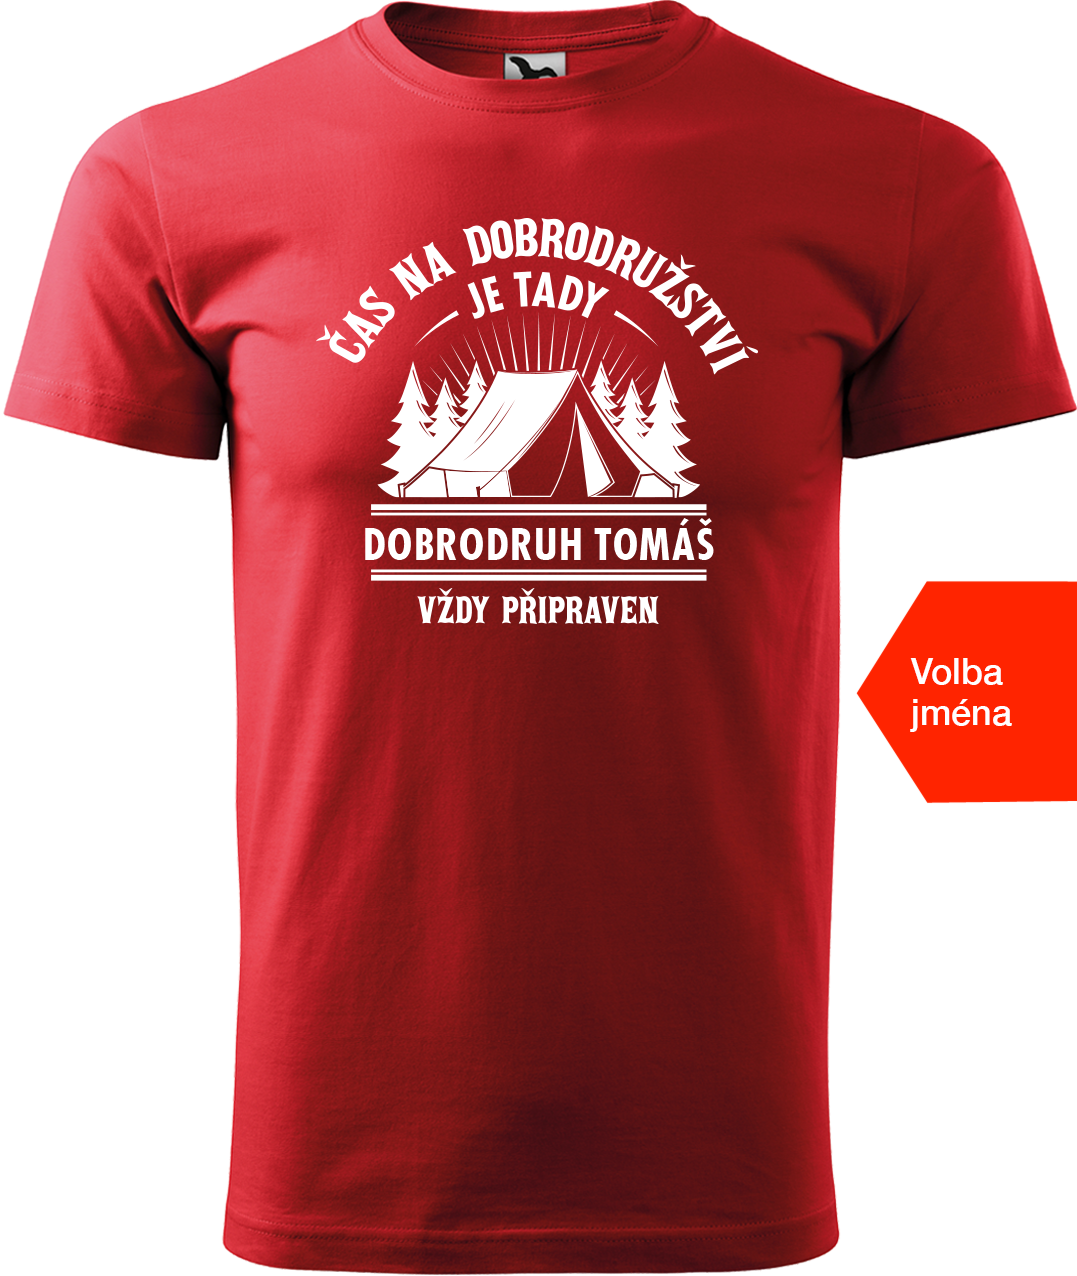 Pánské cestovatelské tričko se jménem - Čas na dobrodružství je tady! Velikost: XL, Barva: Červená (07)